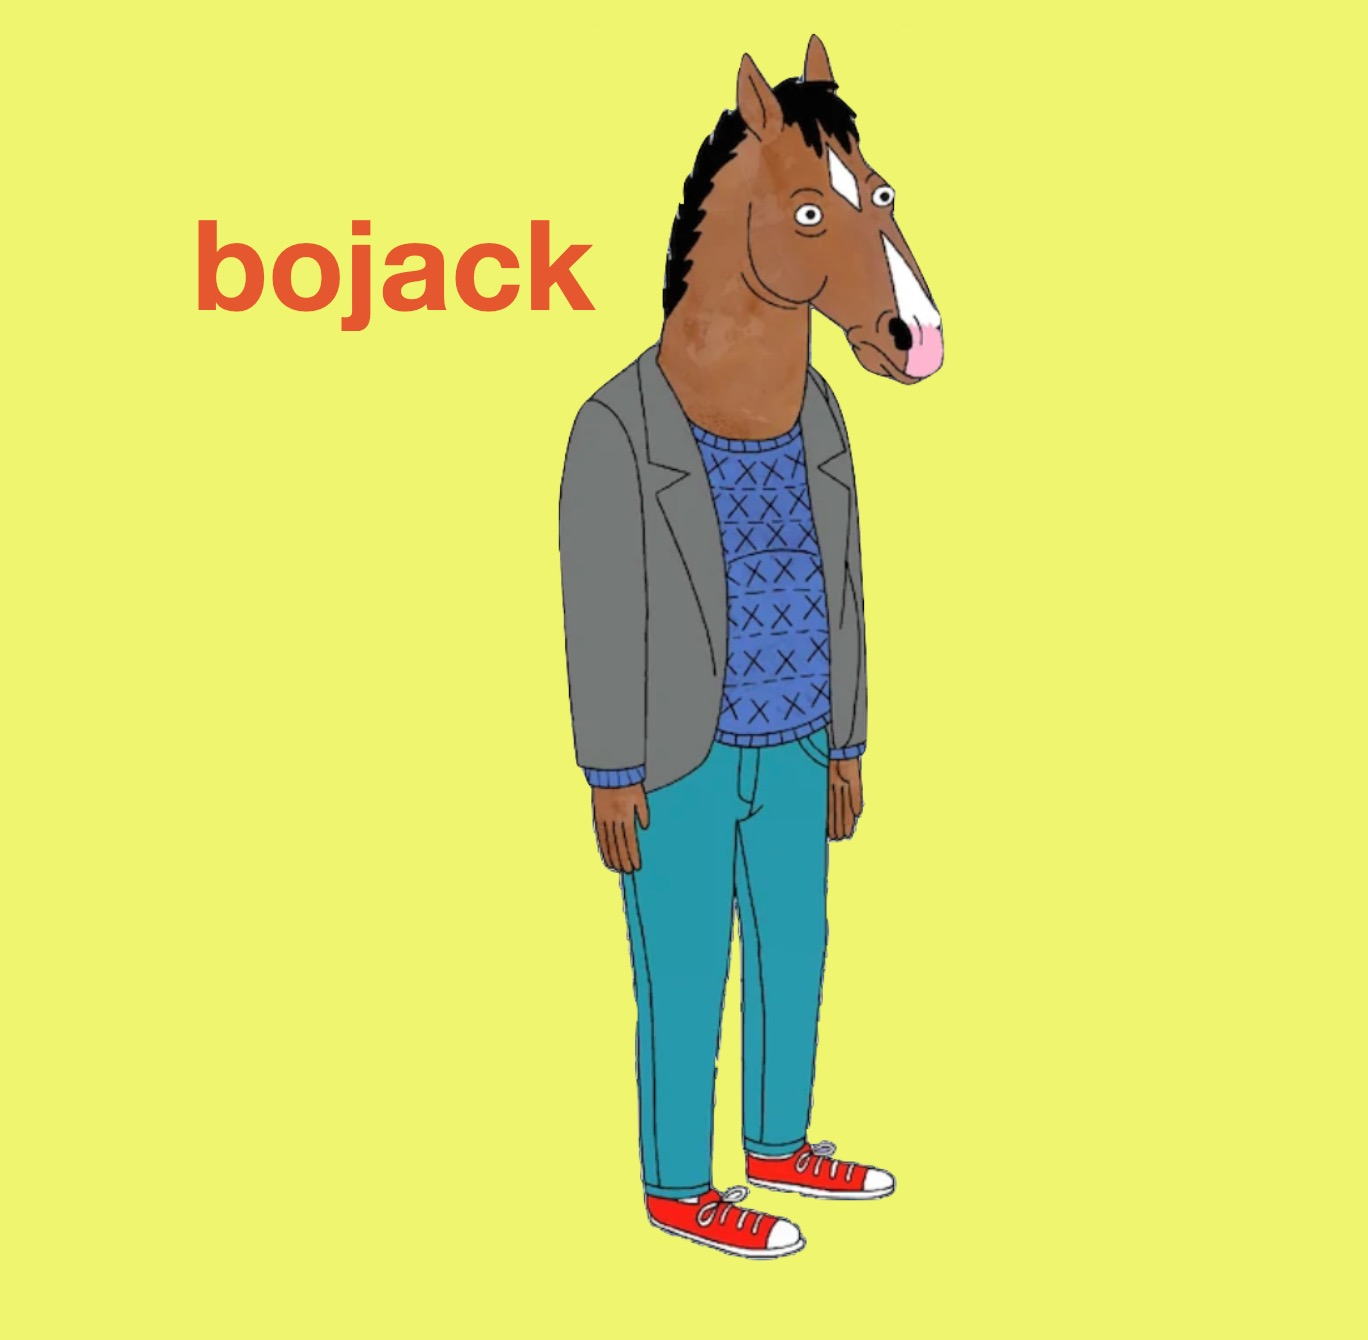 $BOJACK - Bojack Coin